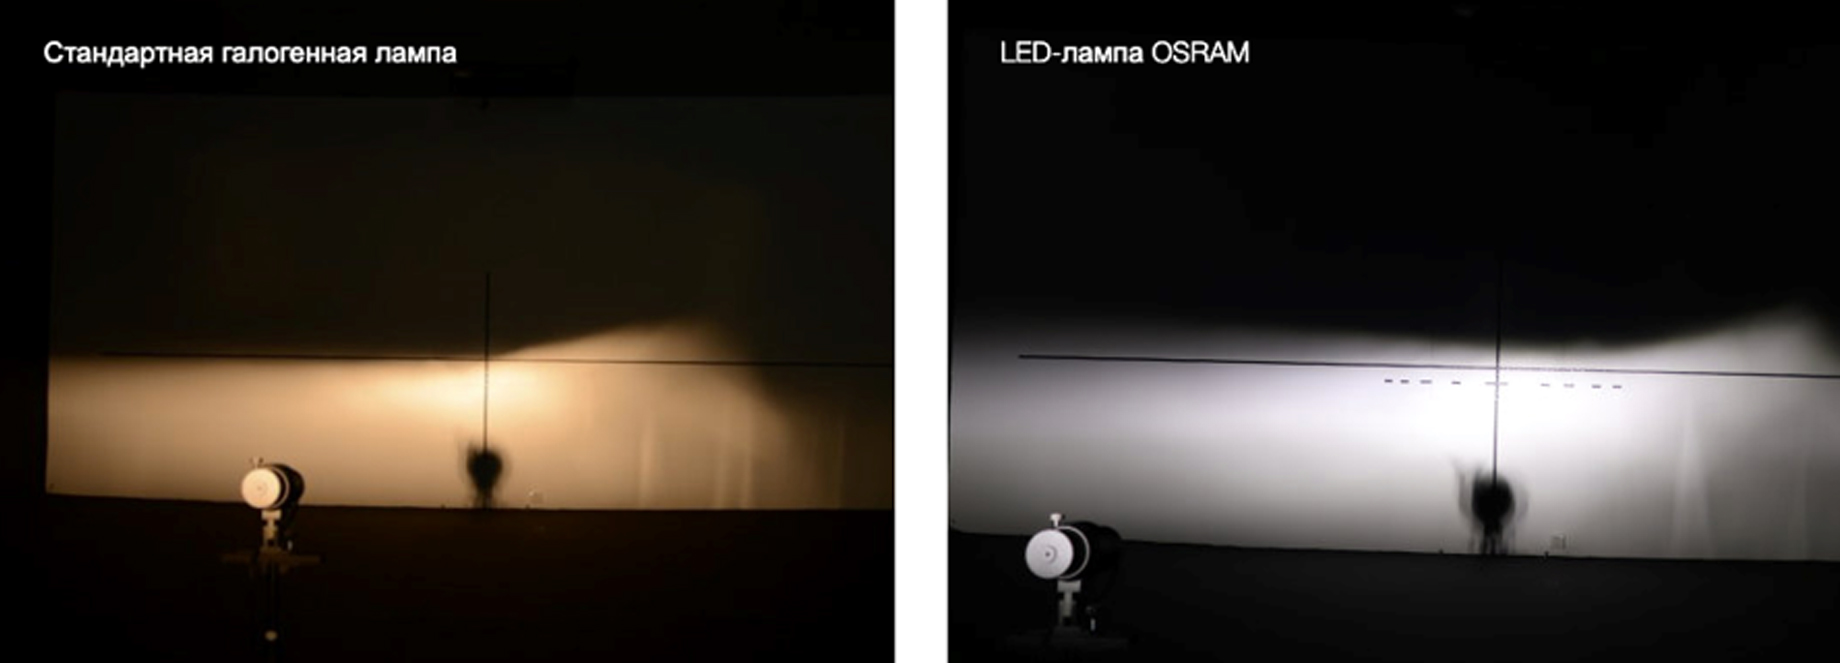 Безопасность и экономия: как светодиодные лампы OSRAM делают жизнь лучше